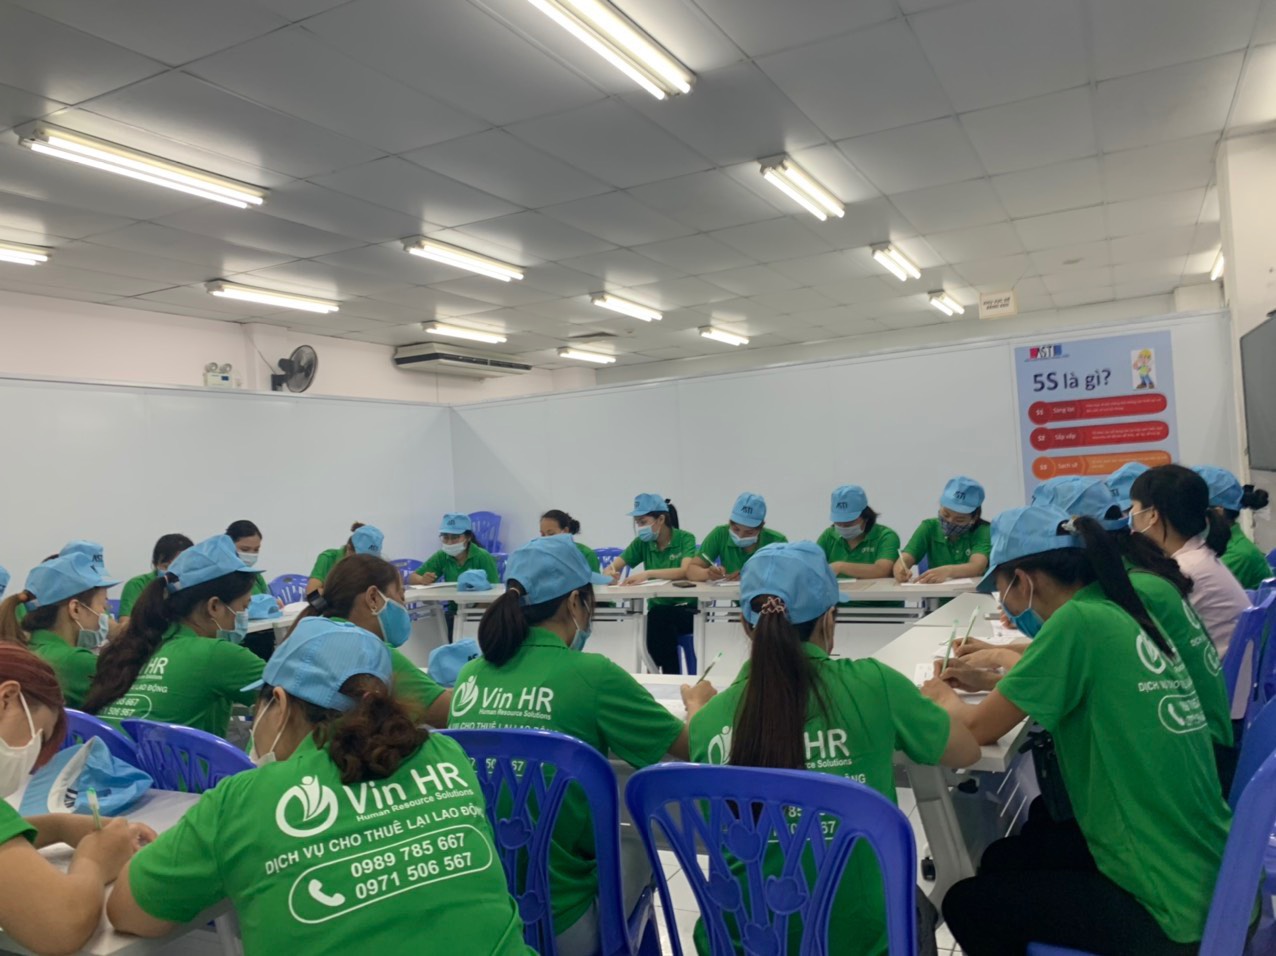 Dịch vụ cung ứng lao động tại khu công nghiệp Thuận Yên của Vin HR